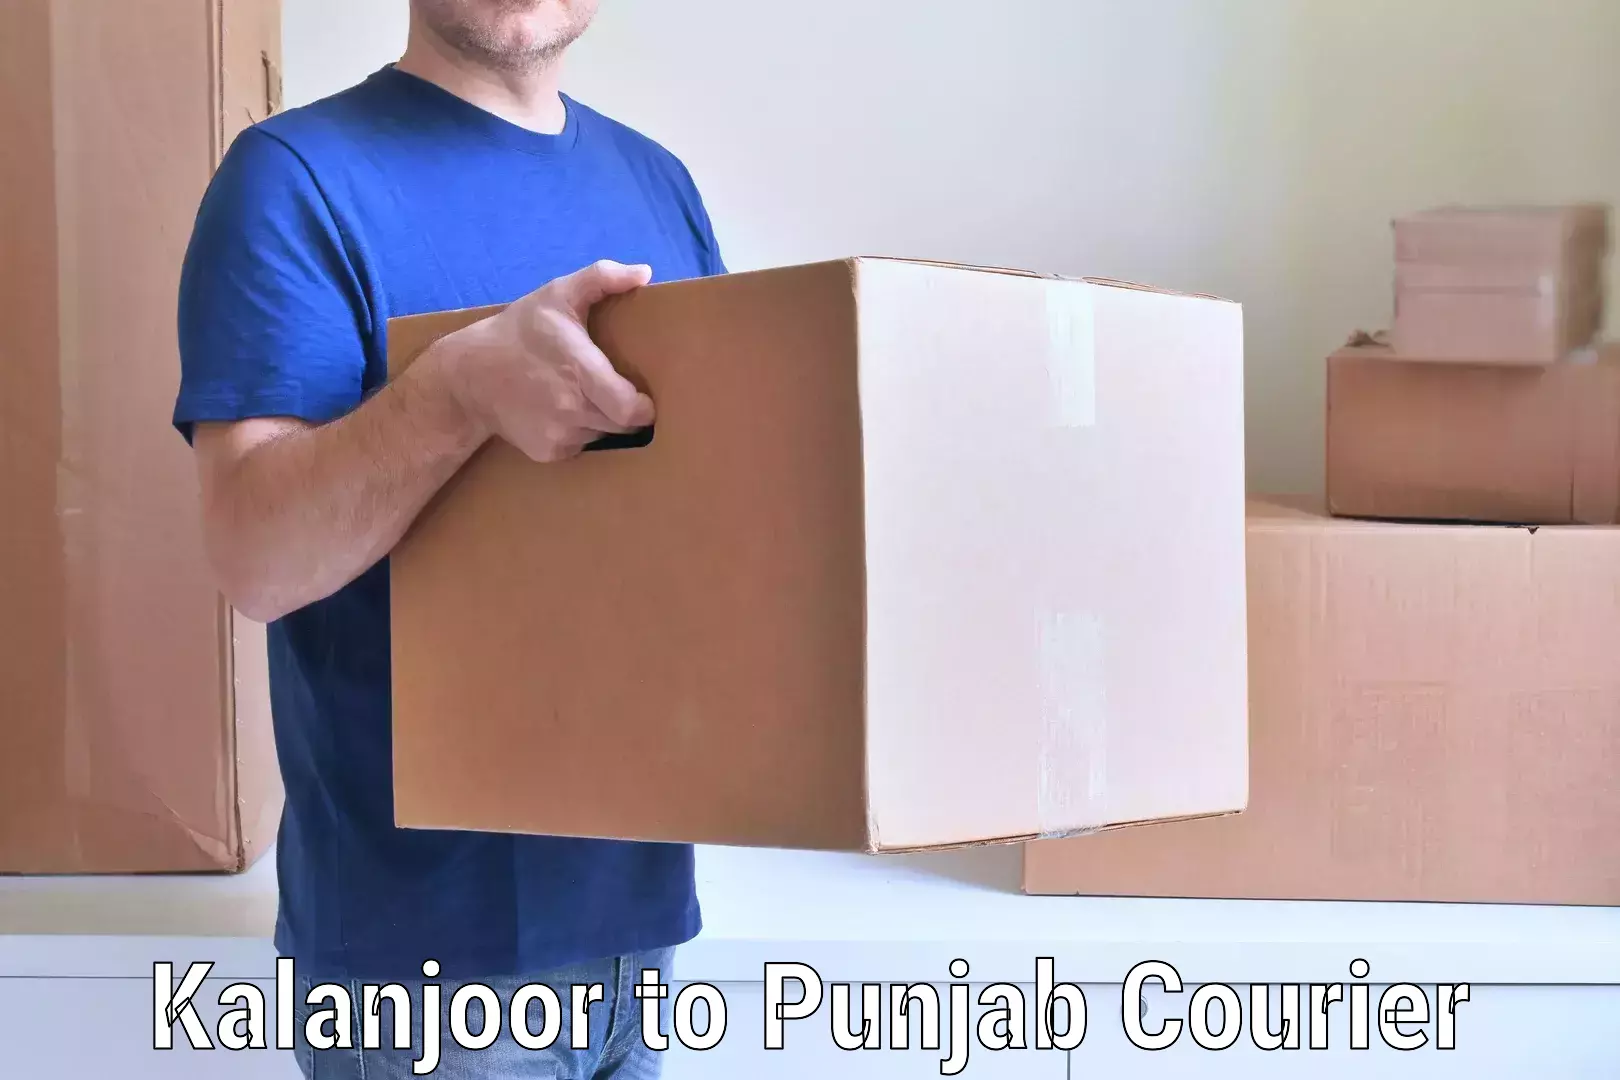 Furniture transport and logistics Kalanjoor to Punjab